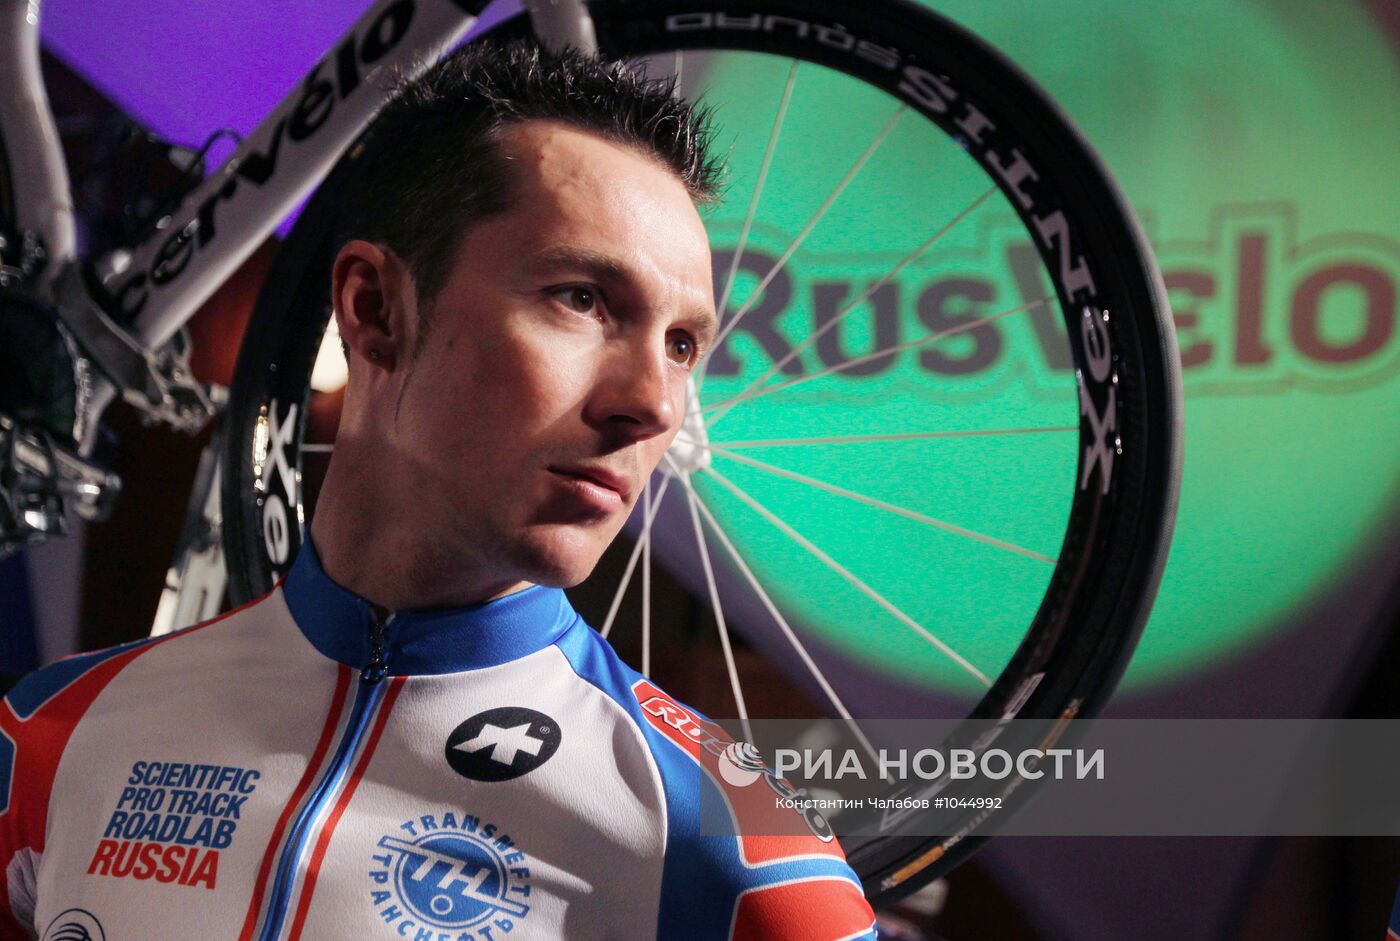 Презентация российской велокоманды "РусВело"